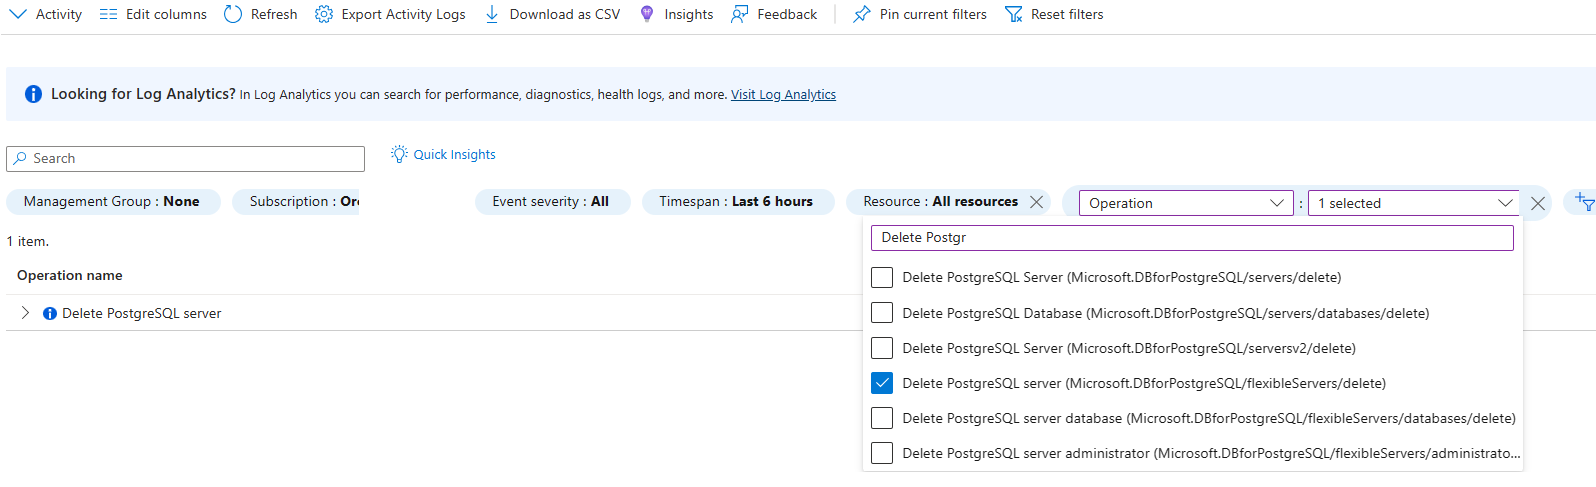 Captura de pantalla que muestra el registro de actividad filtrado para la operación de eliminación del servidor PostgreSQL.